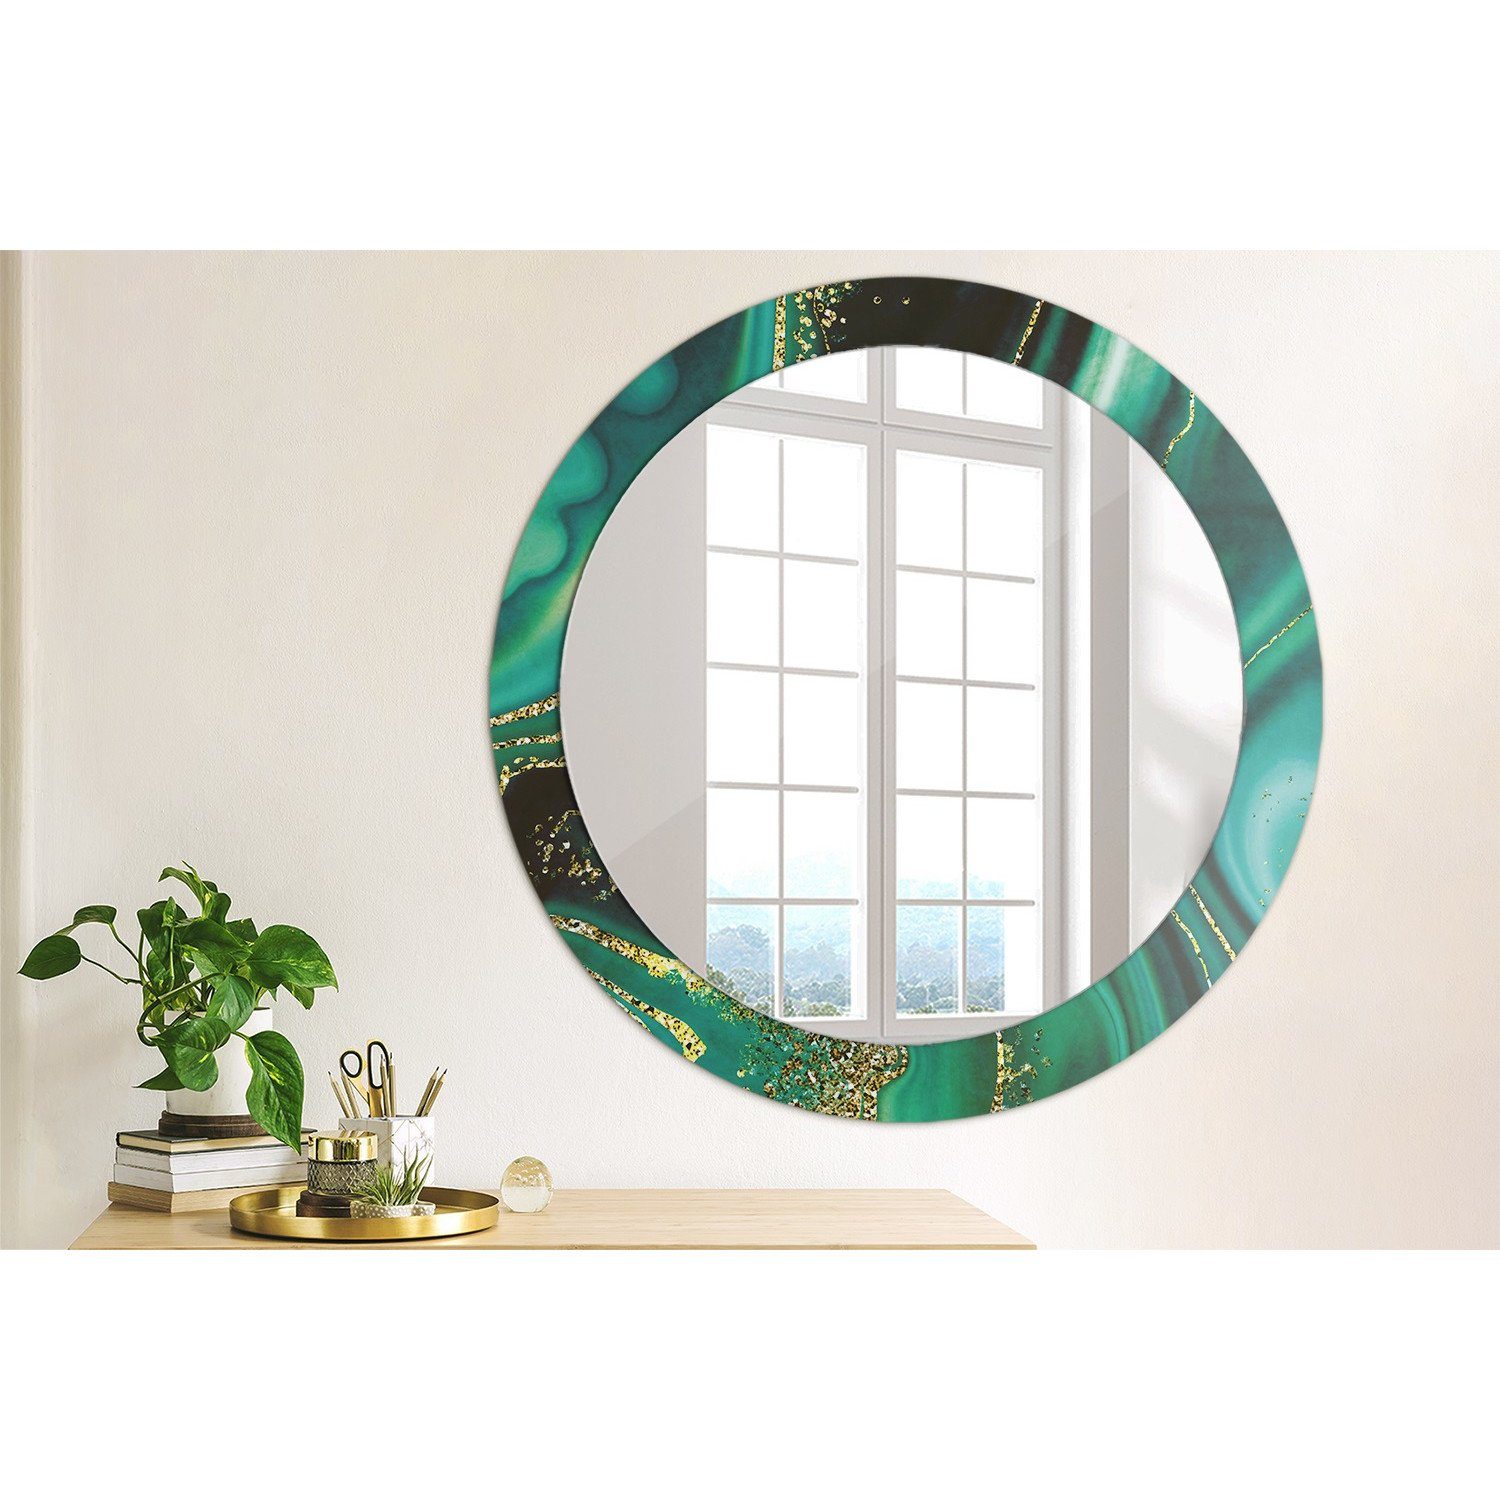 Tulup Badspiegel Rund: Spiegel (Hängespiegel, Grün Aufdruck) mit Design Badspiegel Ø80cm Wandmontage Deko Rund mit Smaragd Aufdruck